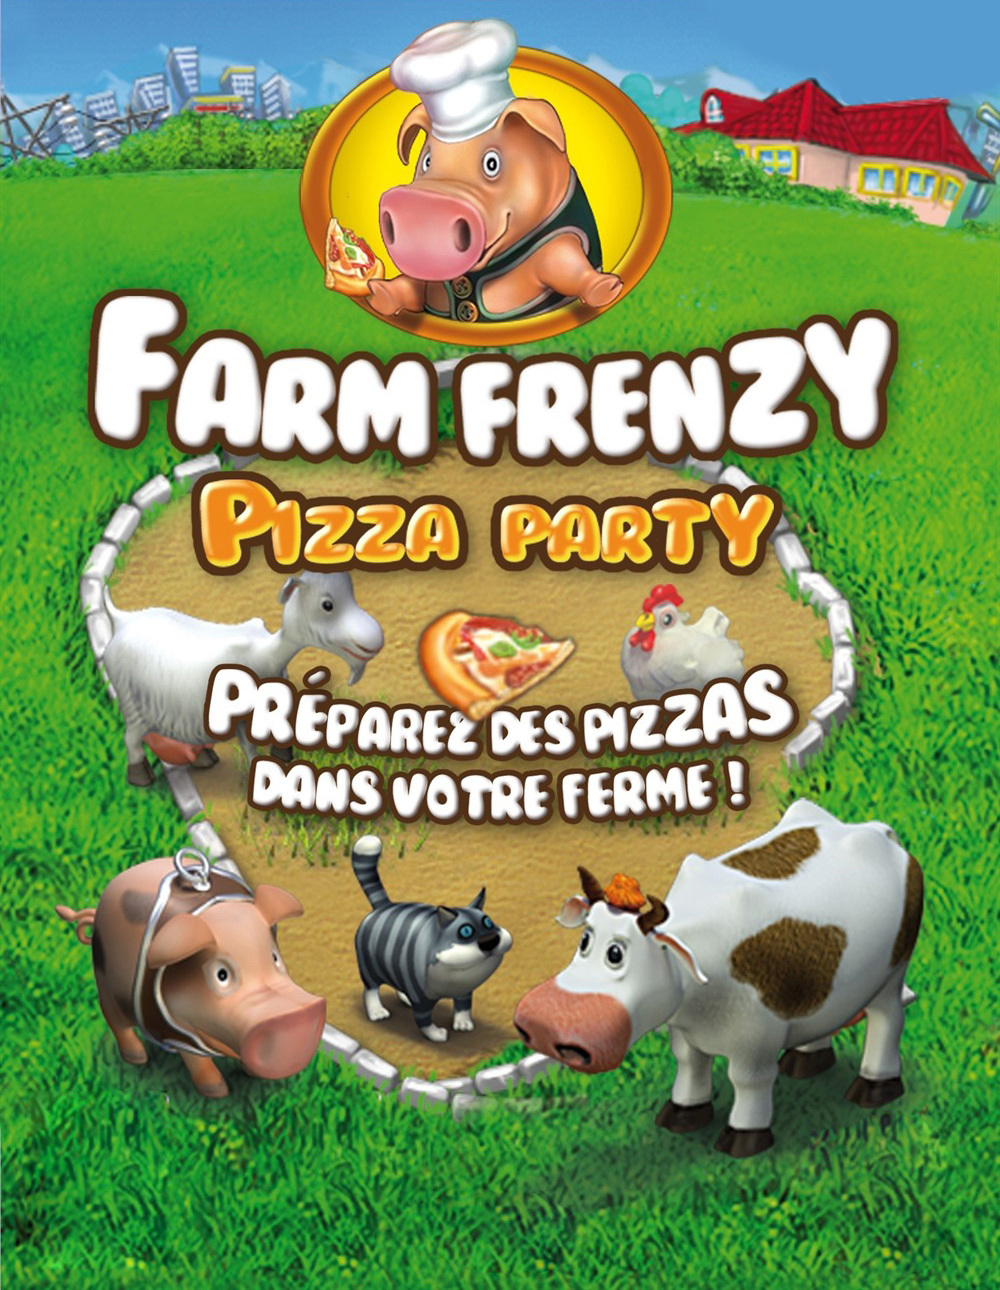 Игры ферма печем пиццу. Весёлая ферма. Веселая ферма пицца пати. Весёлая ферма печём пиццу. Весёлая ферма 3 печём пиццу.